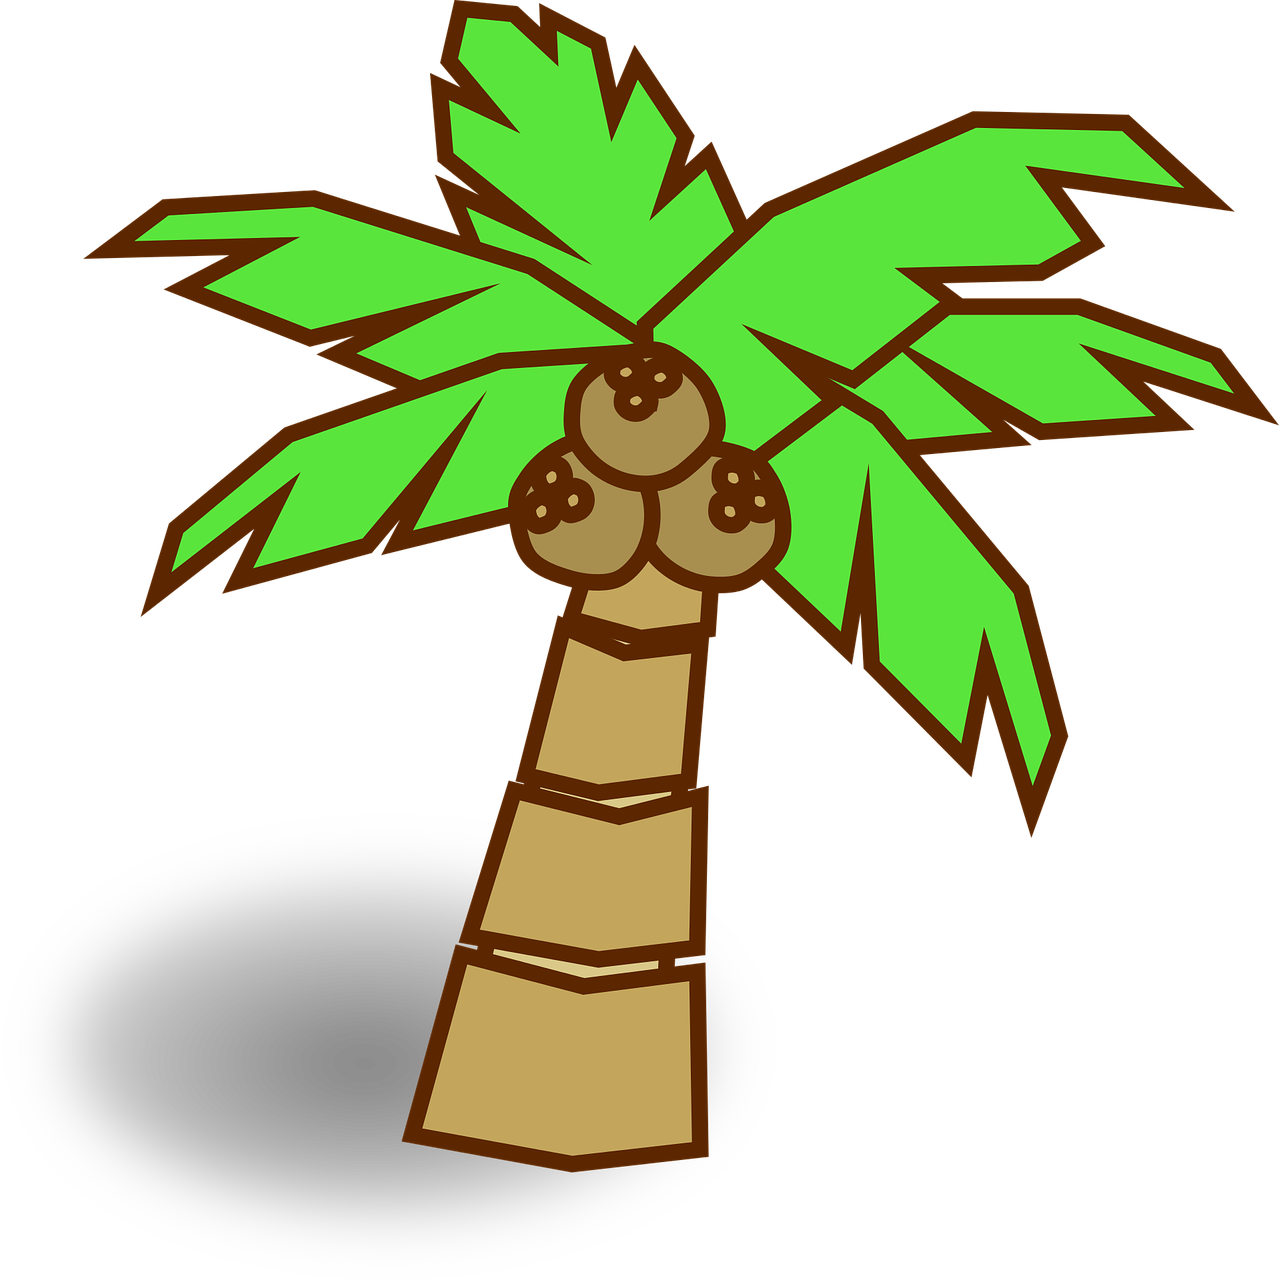 coconut jungle map icon free photo